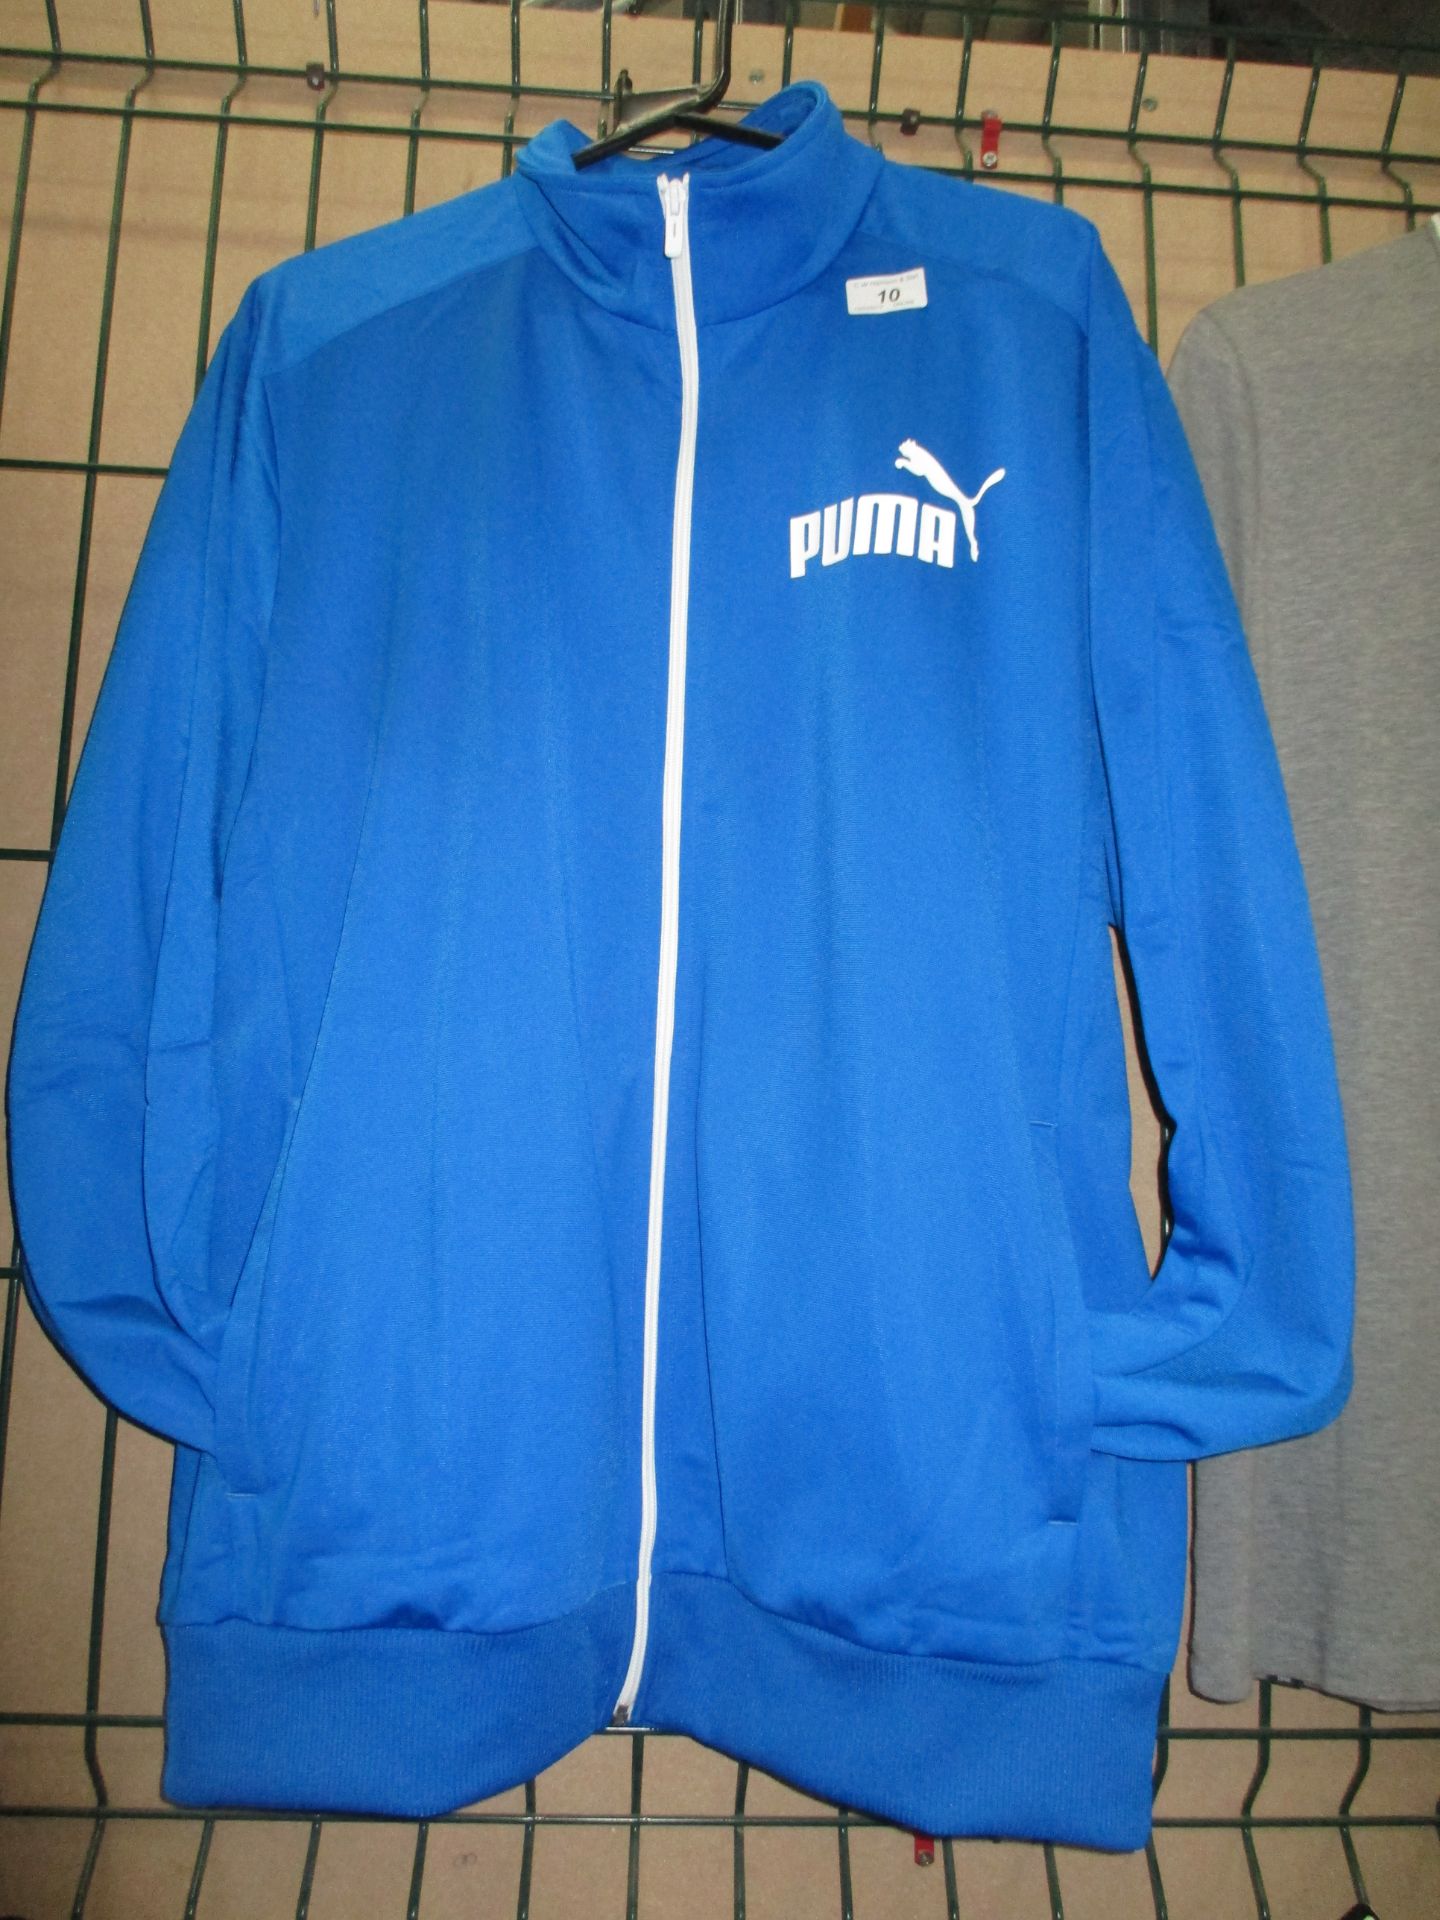 A Puma ESS royal blue polly jacket size XL